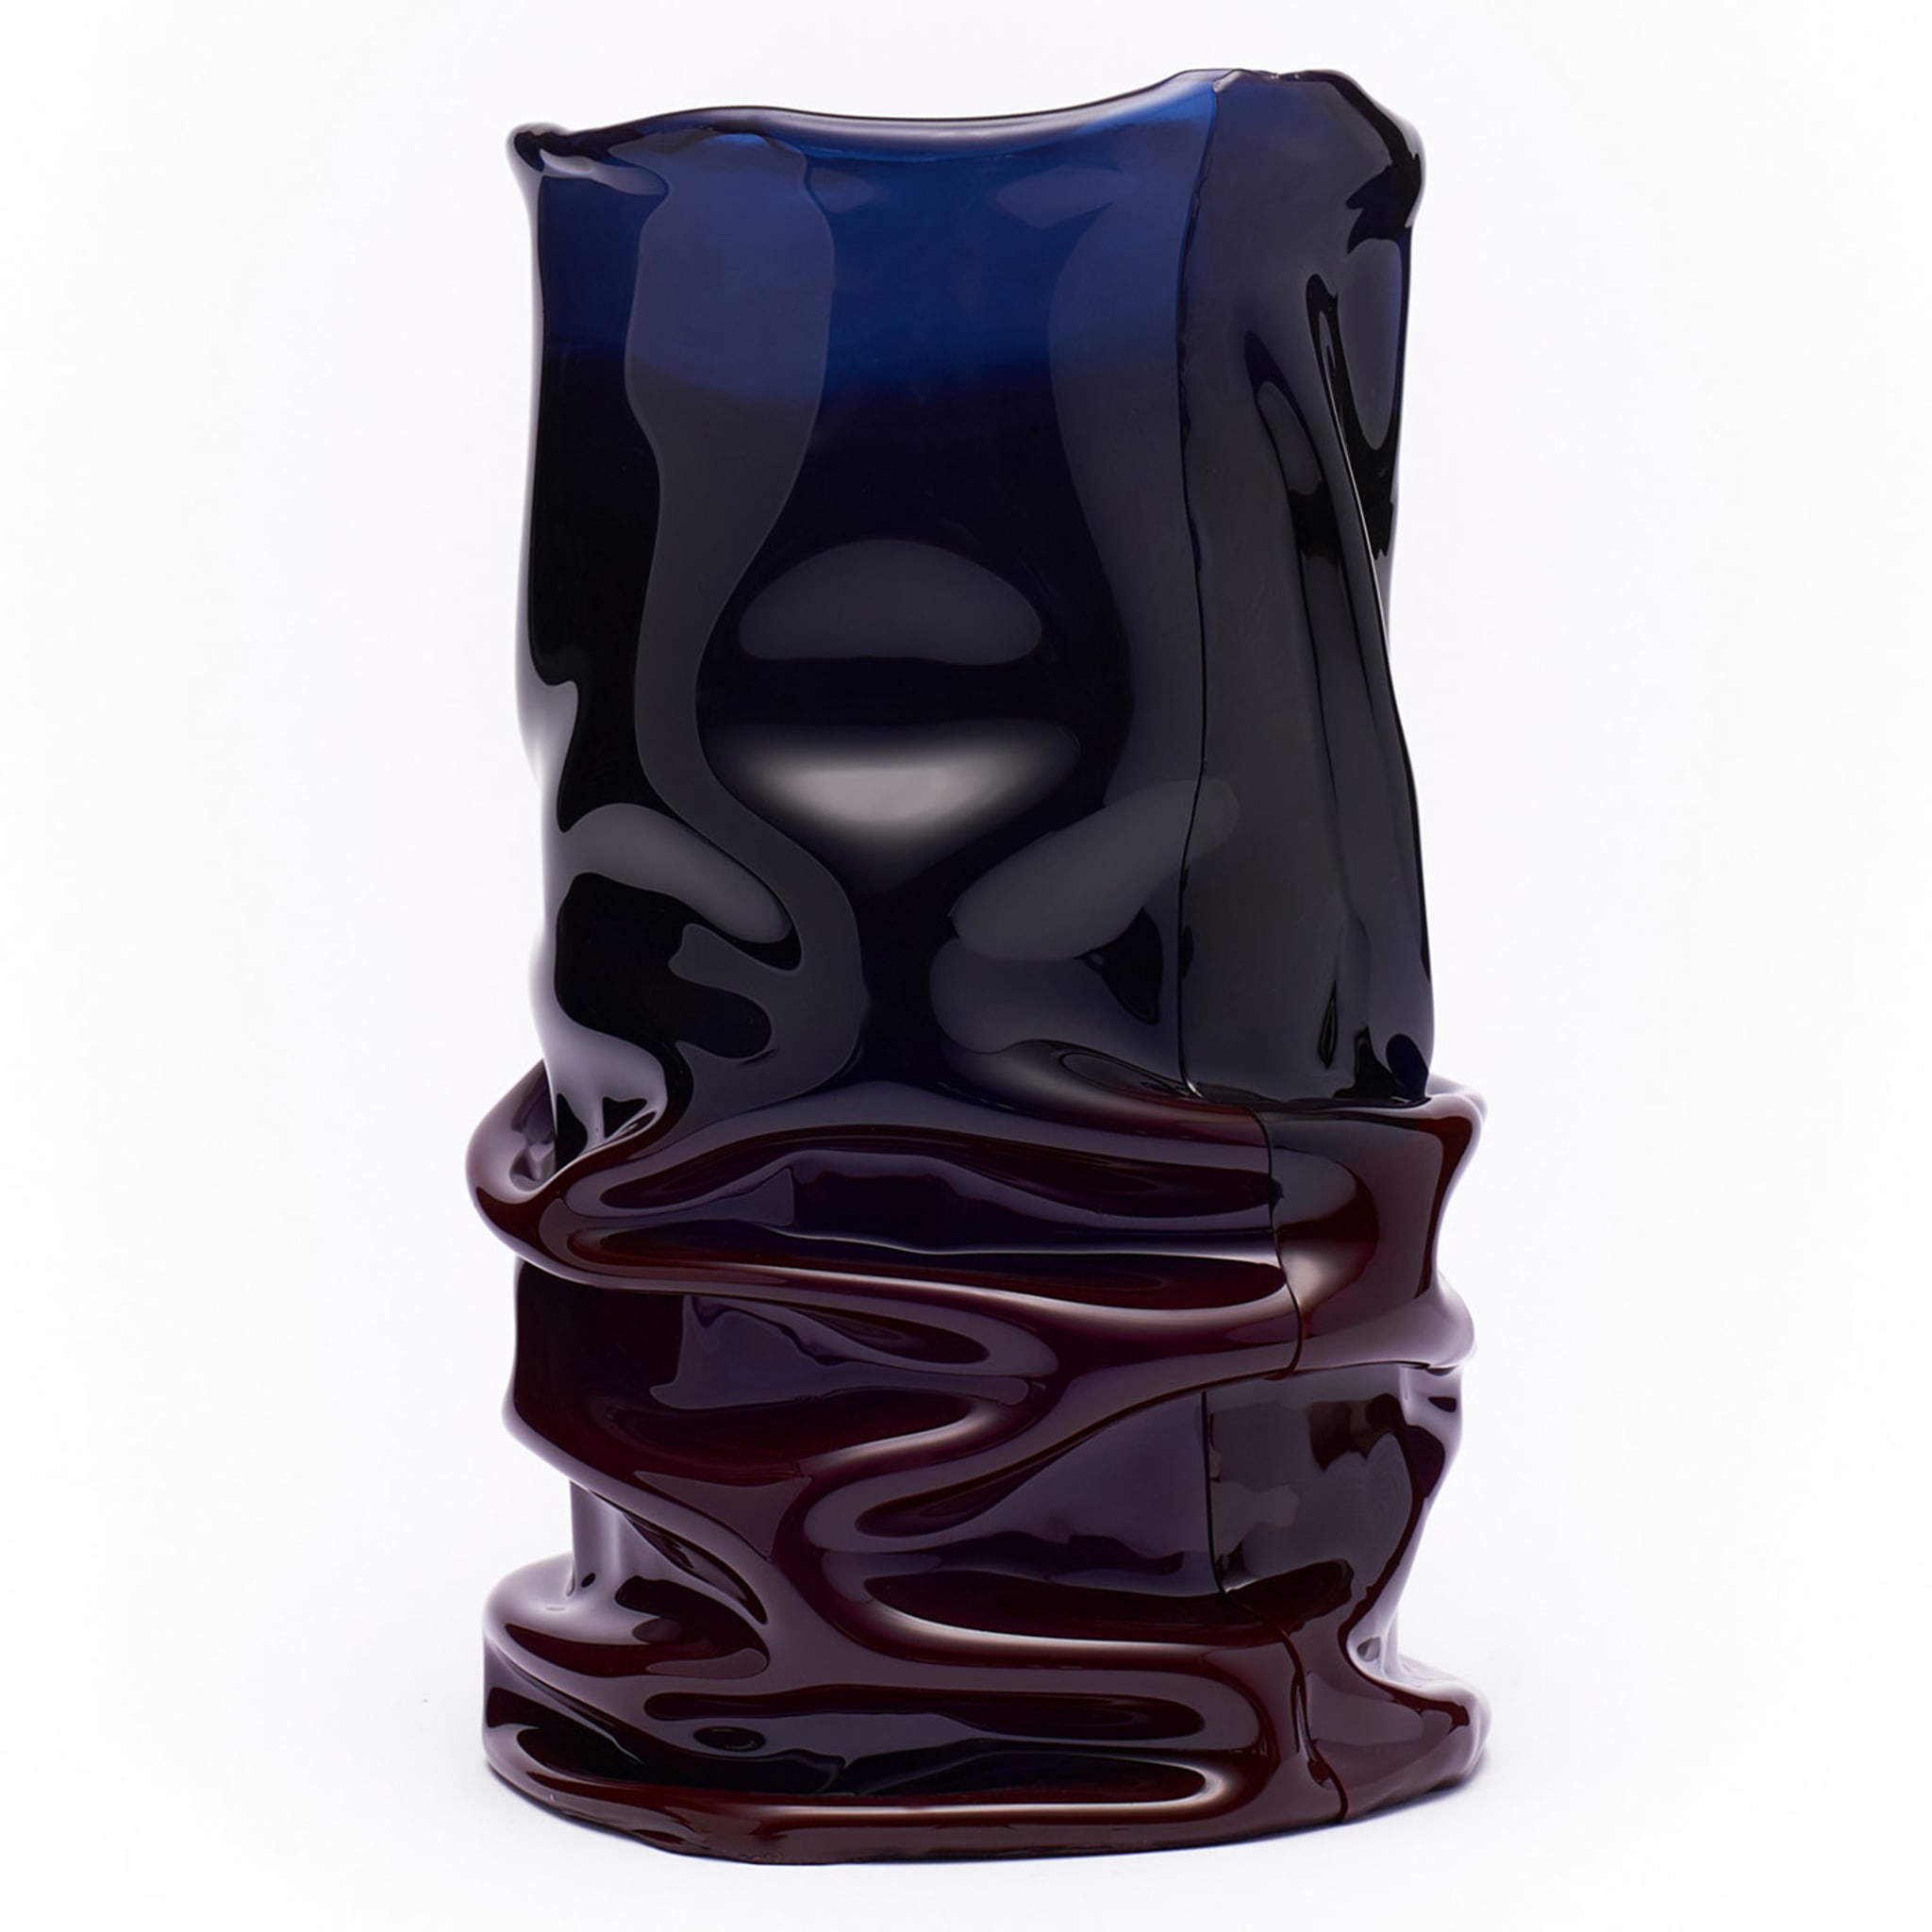 Venere Medium Blue/Plum Vase - Alternative view 2